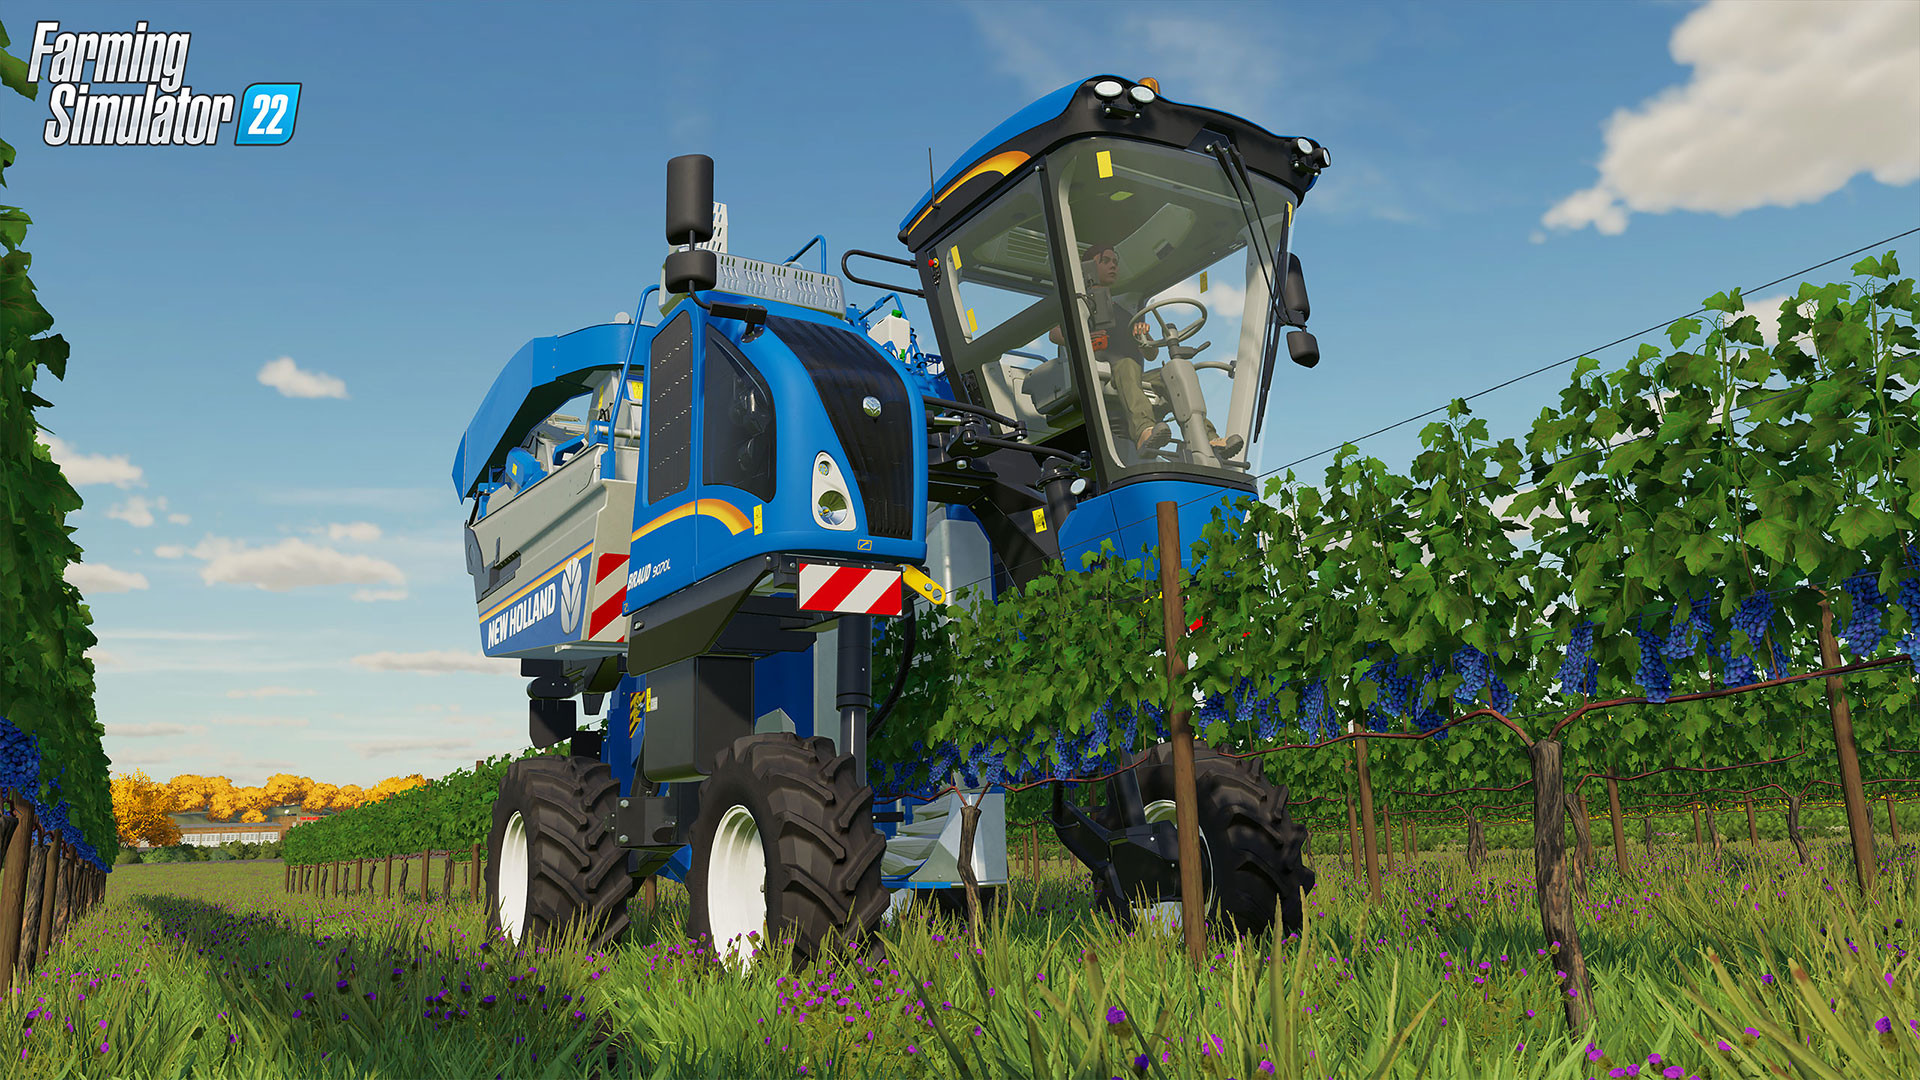 Скриншот-2 из игры Farming Simulator 22 для XBOX